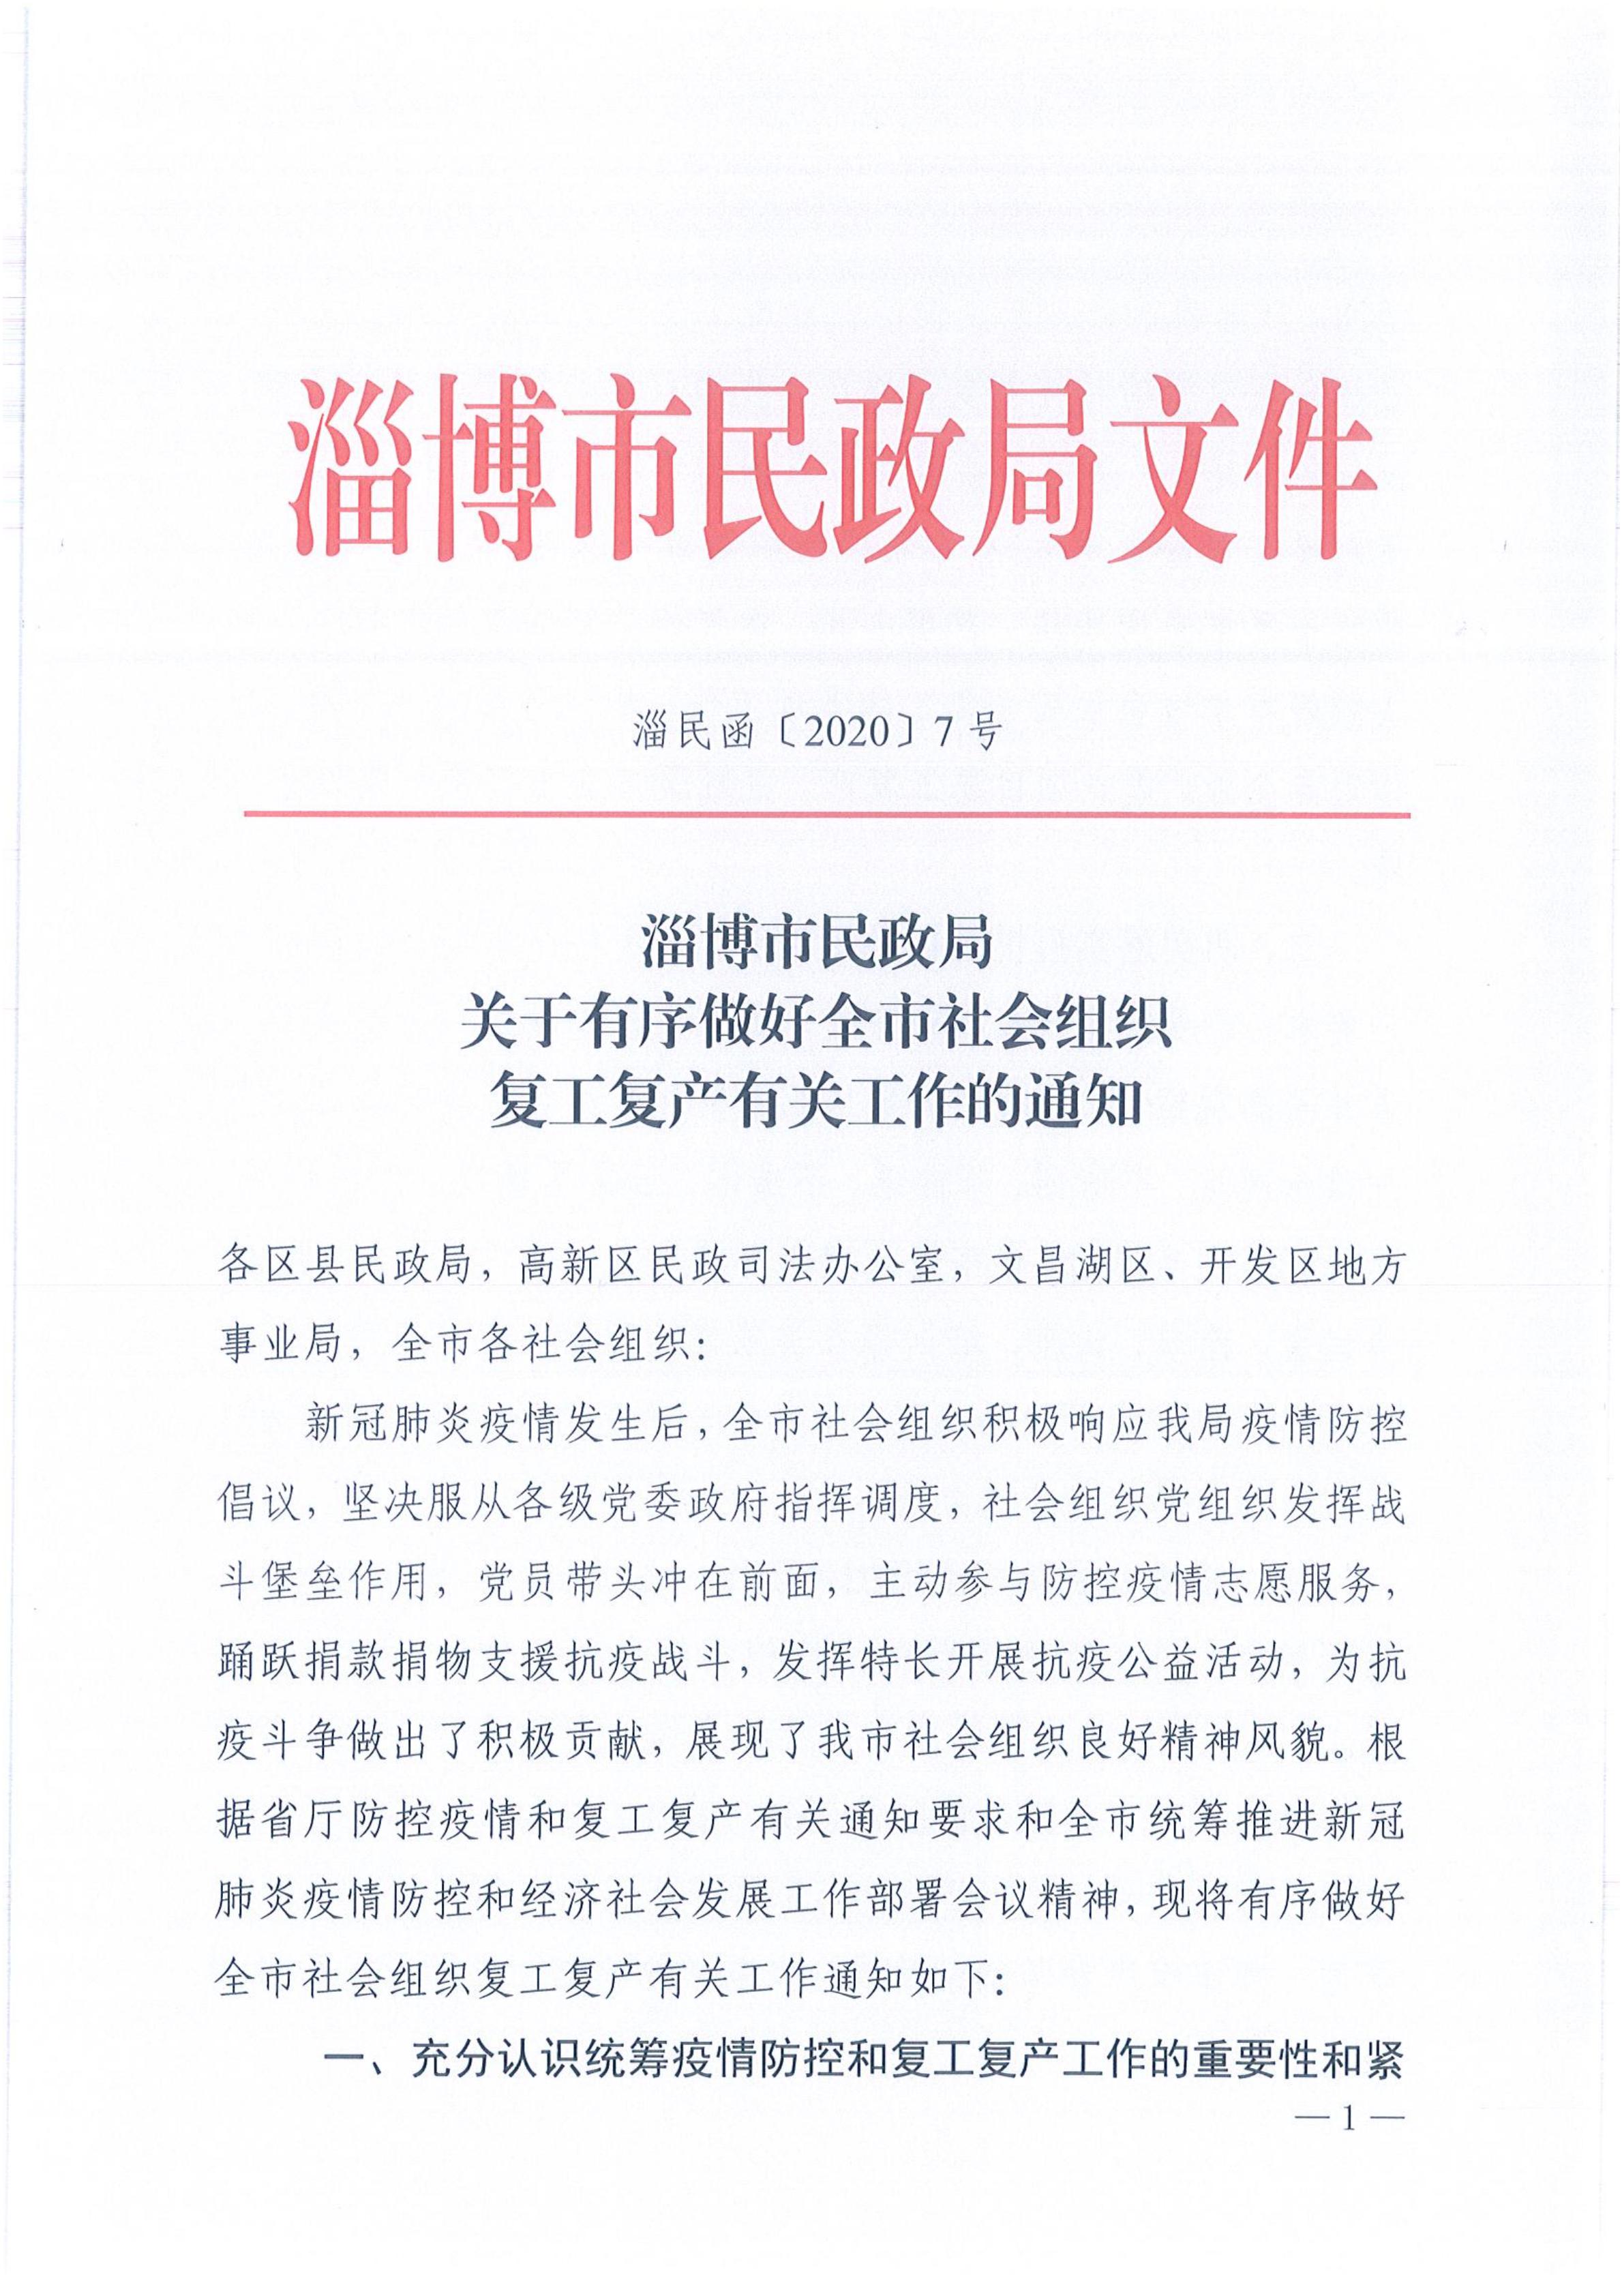 淄民函2020-7号 关于有序做好全市社会组织复工复产有关工作的通知(1)_00.jpg